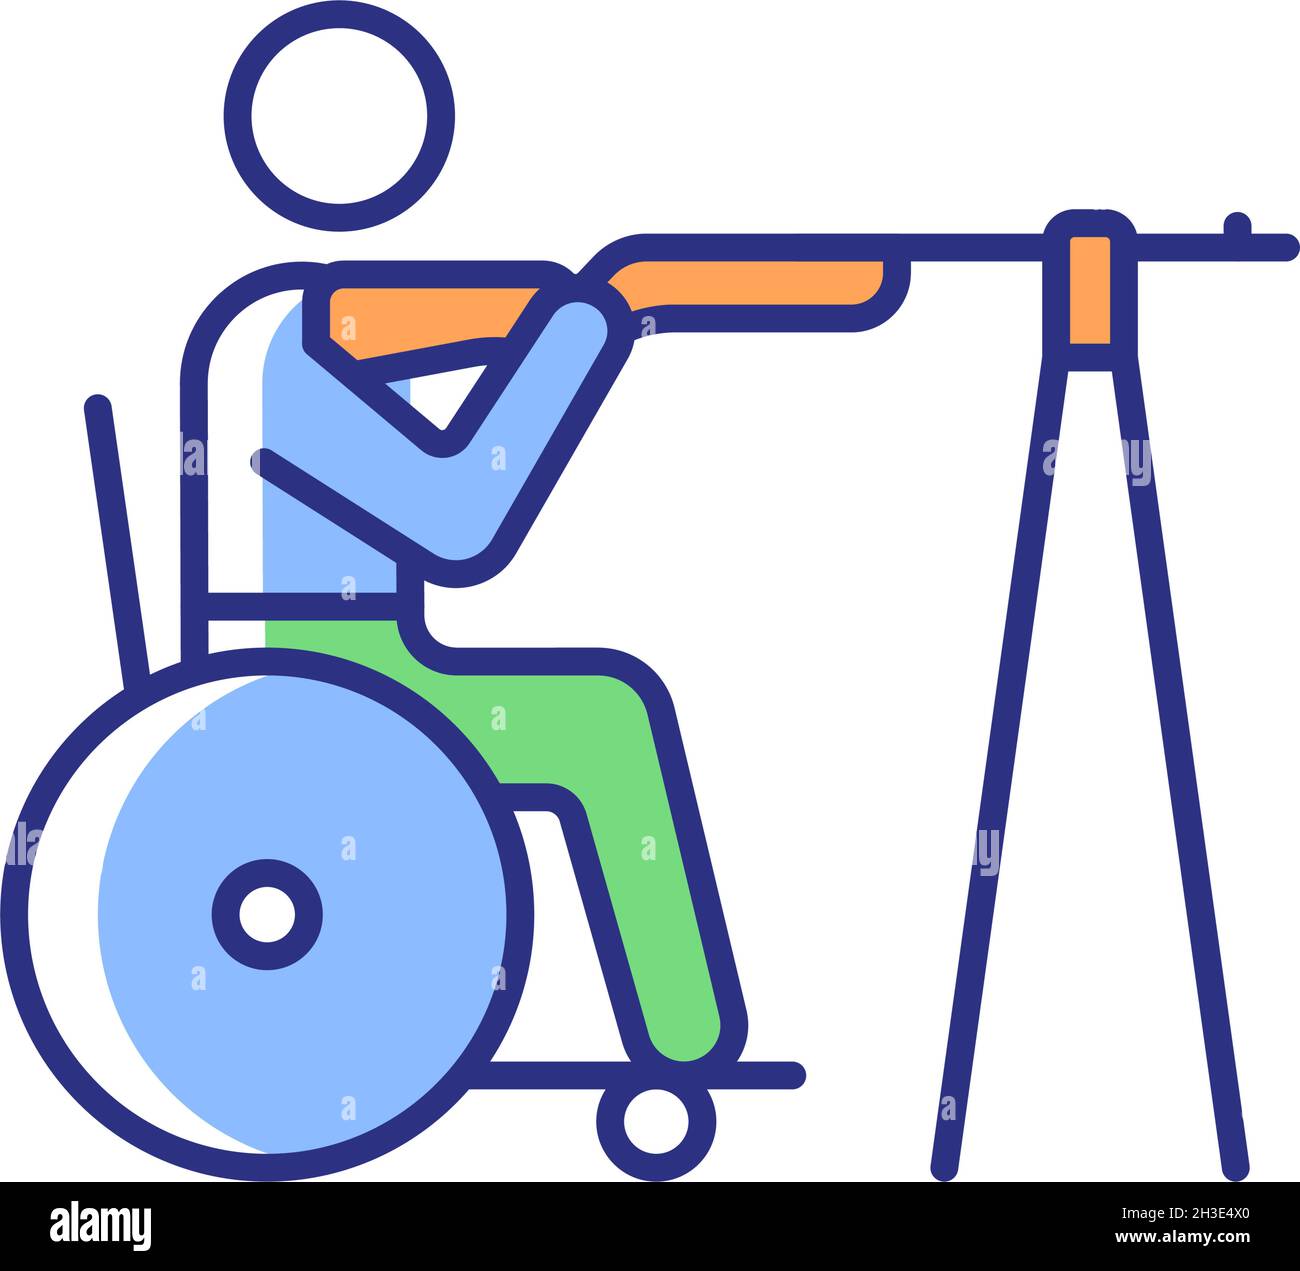 Icône de couleur RVB pour prise de vue en fauteuil roulant Illustration de Vecteur